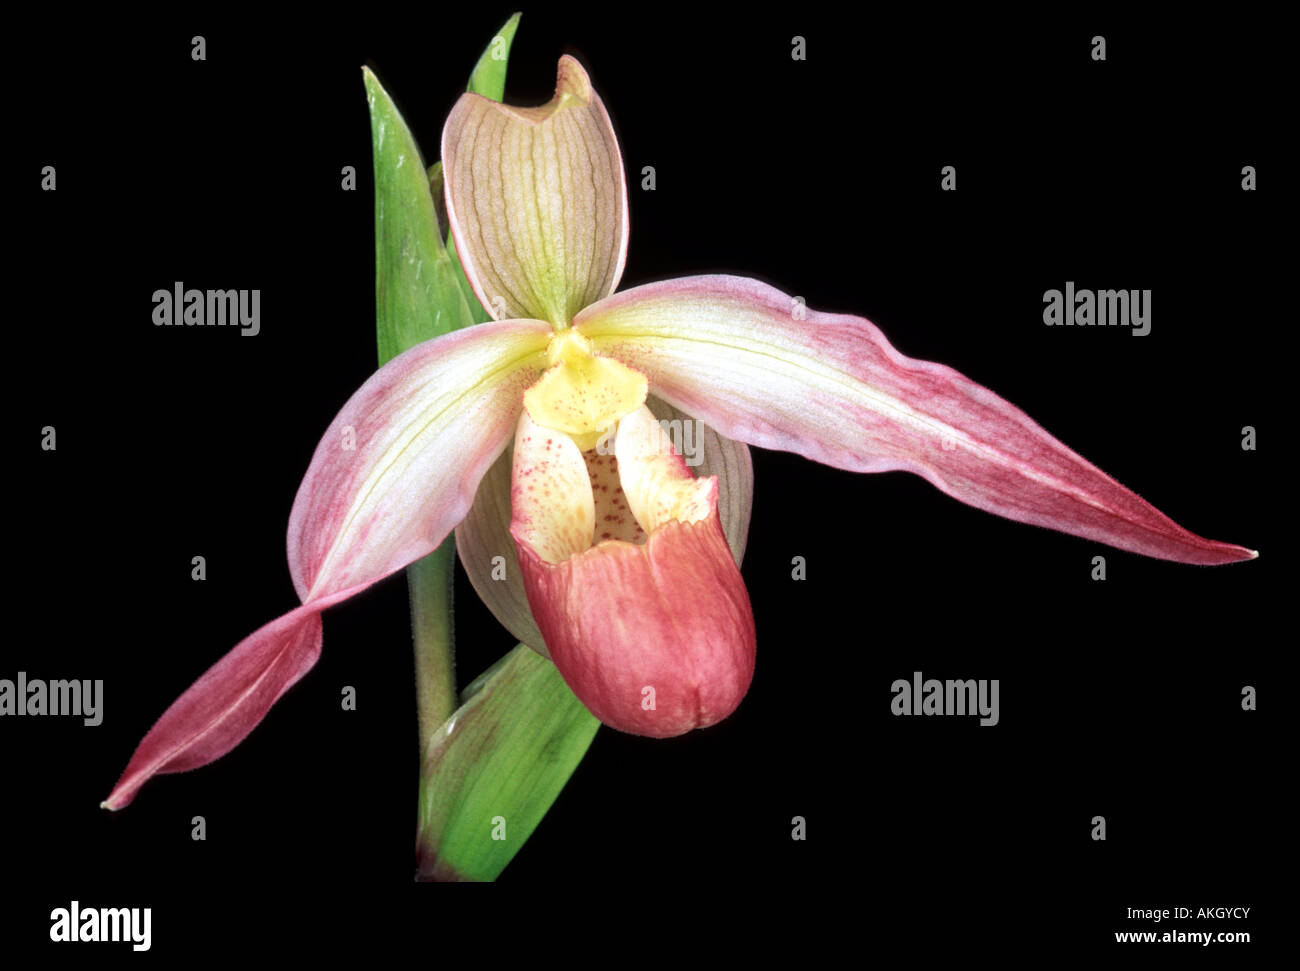 Phragmipedium Sedenii 'Calurum' Stock Photo